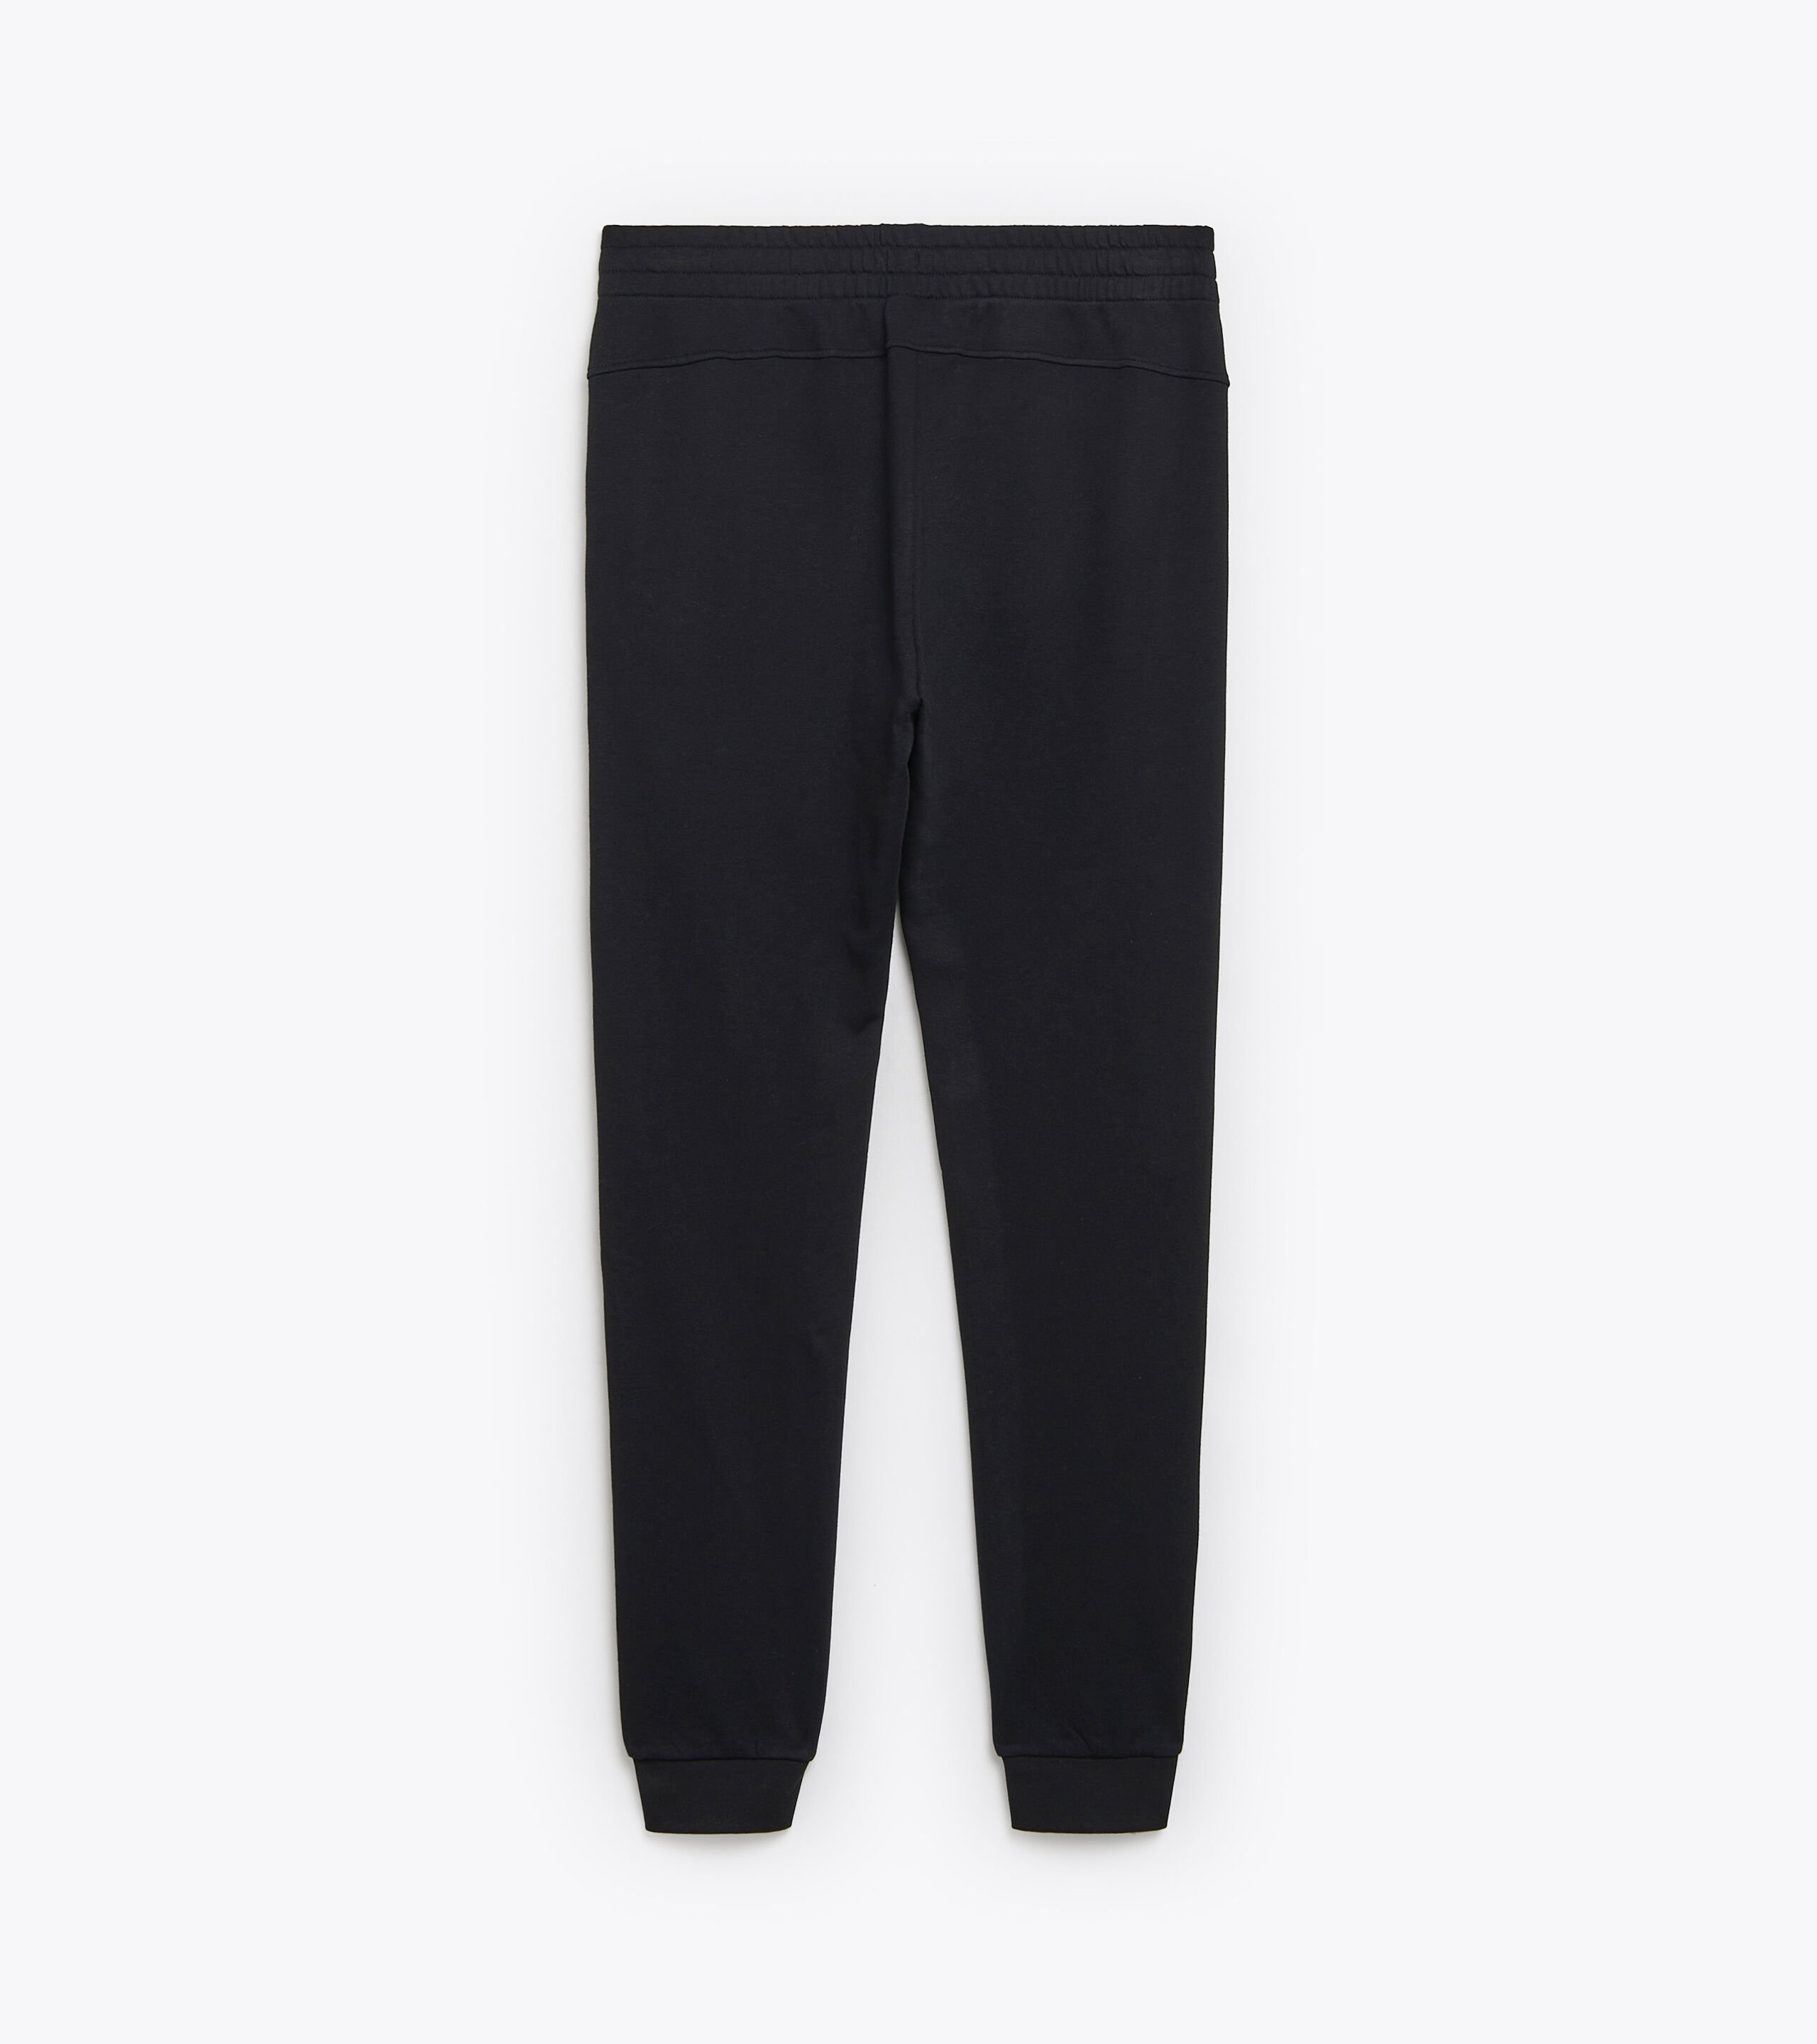 Buy Khaki Trousers  Pants for Men by Hubberholme Online  Ajiocom